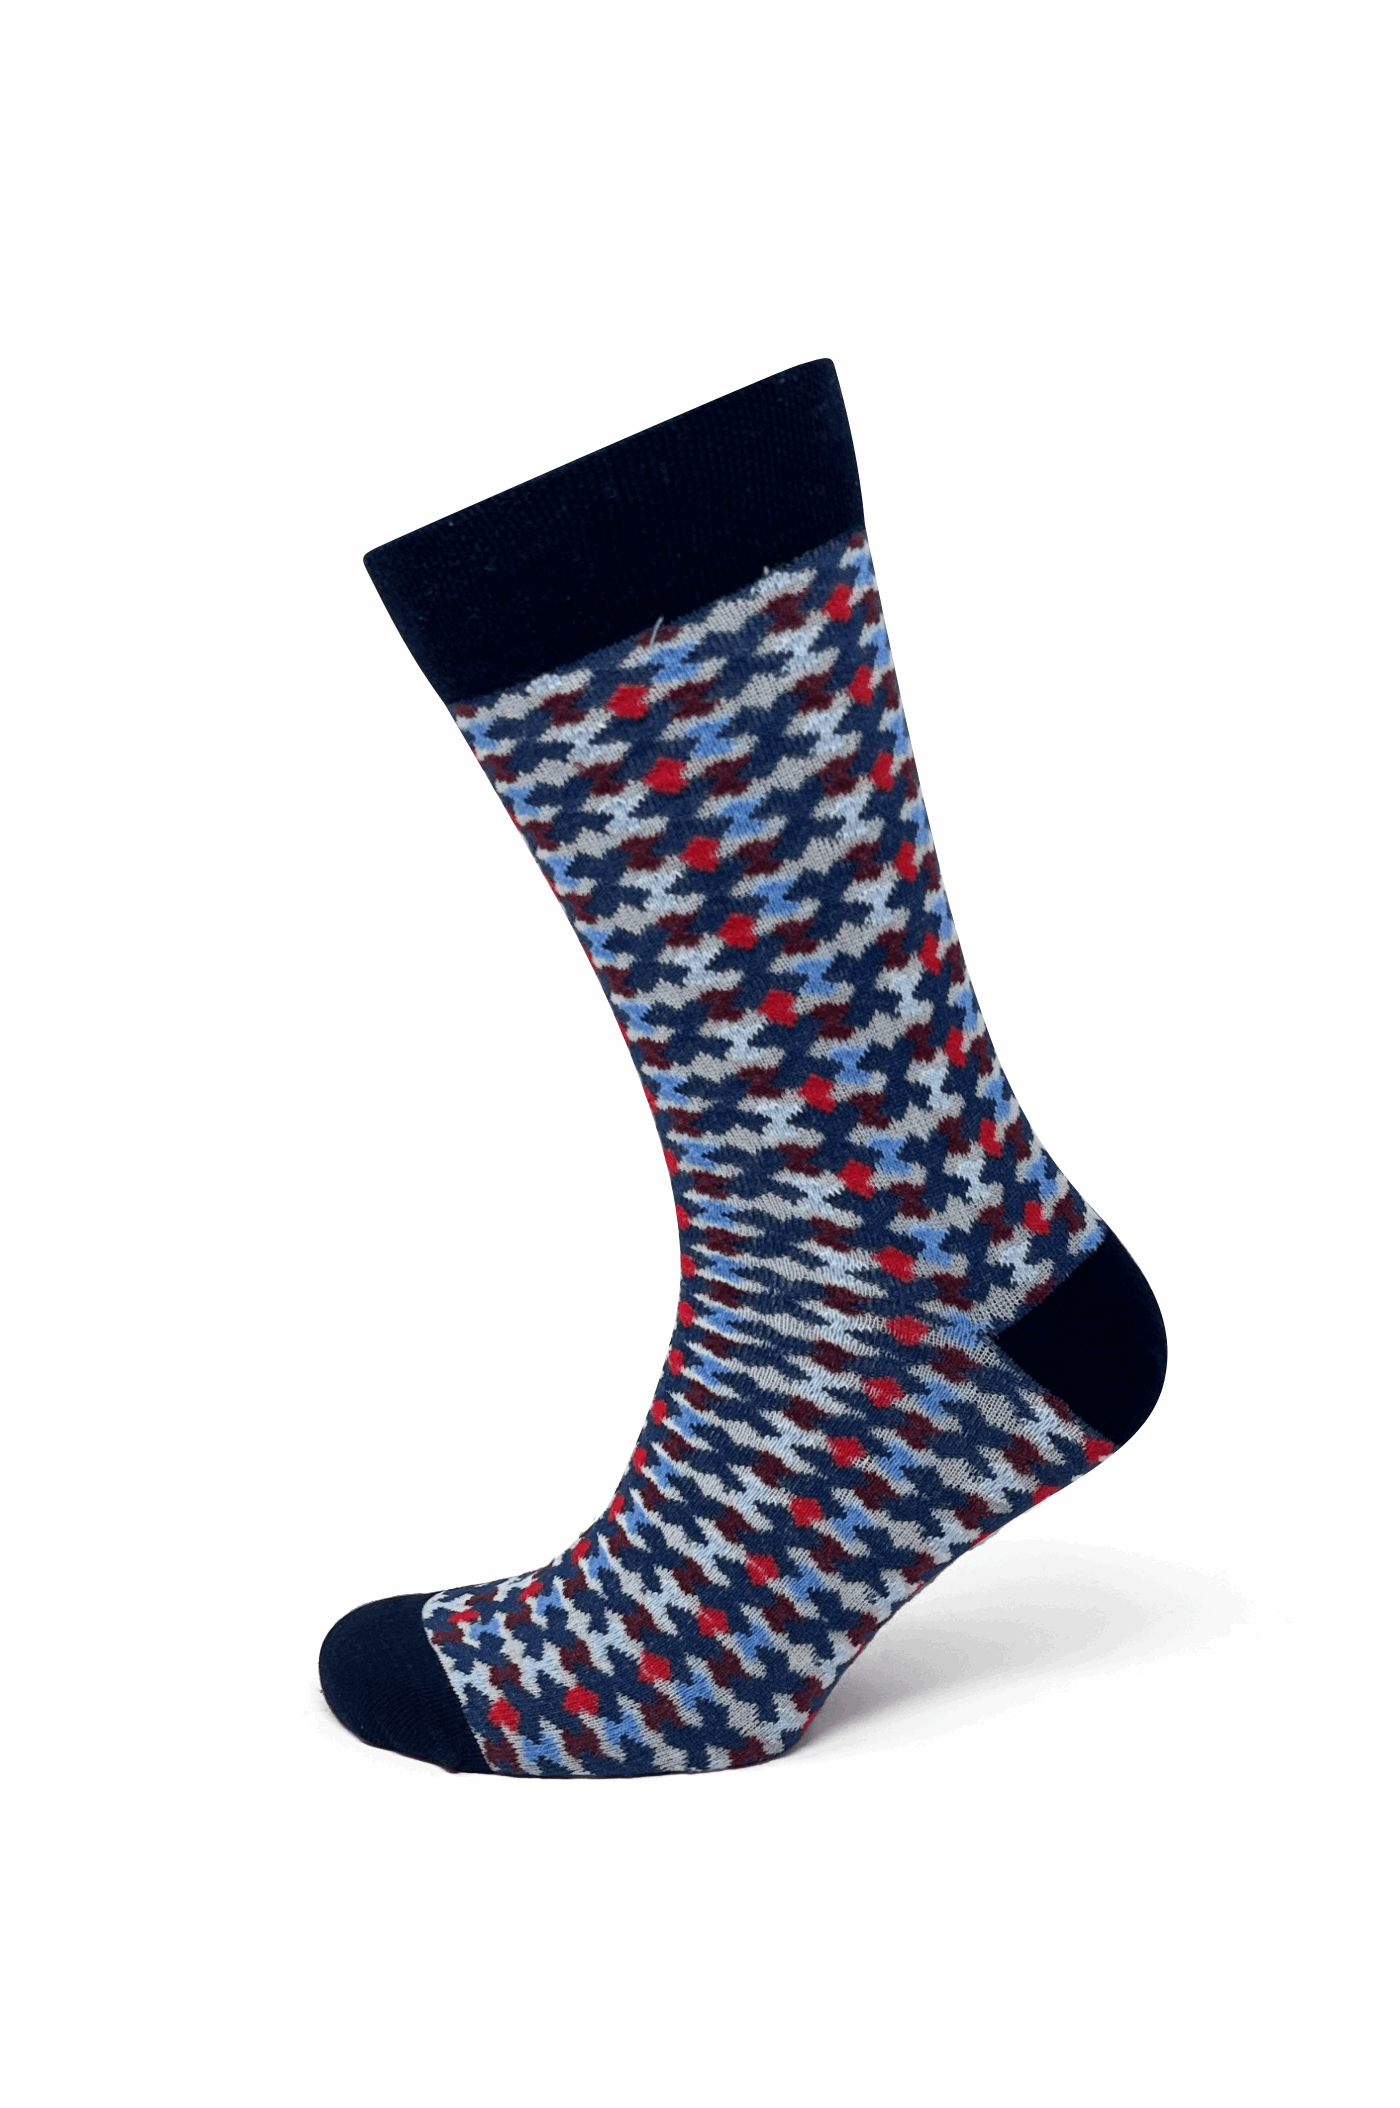 Modische Socke mit Muster